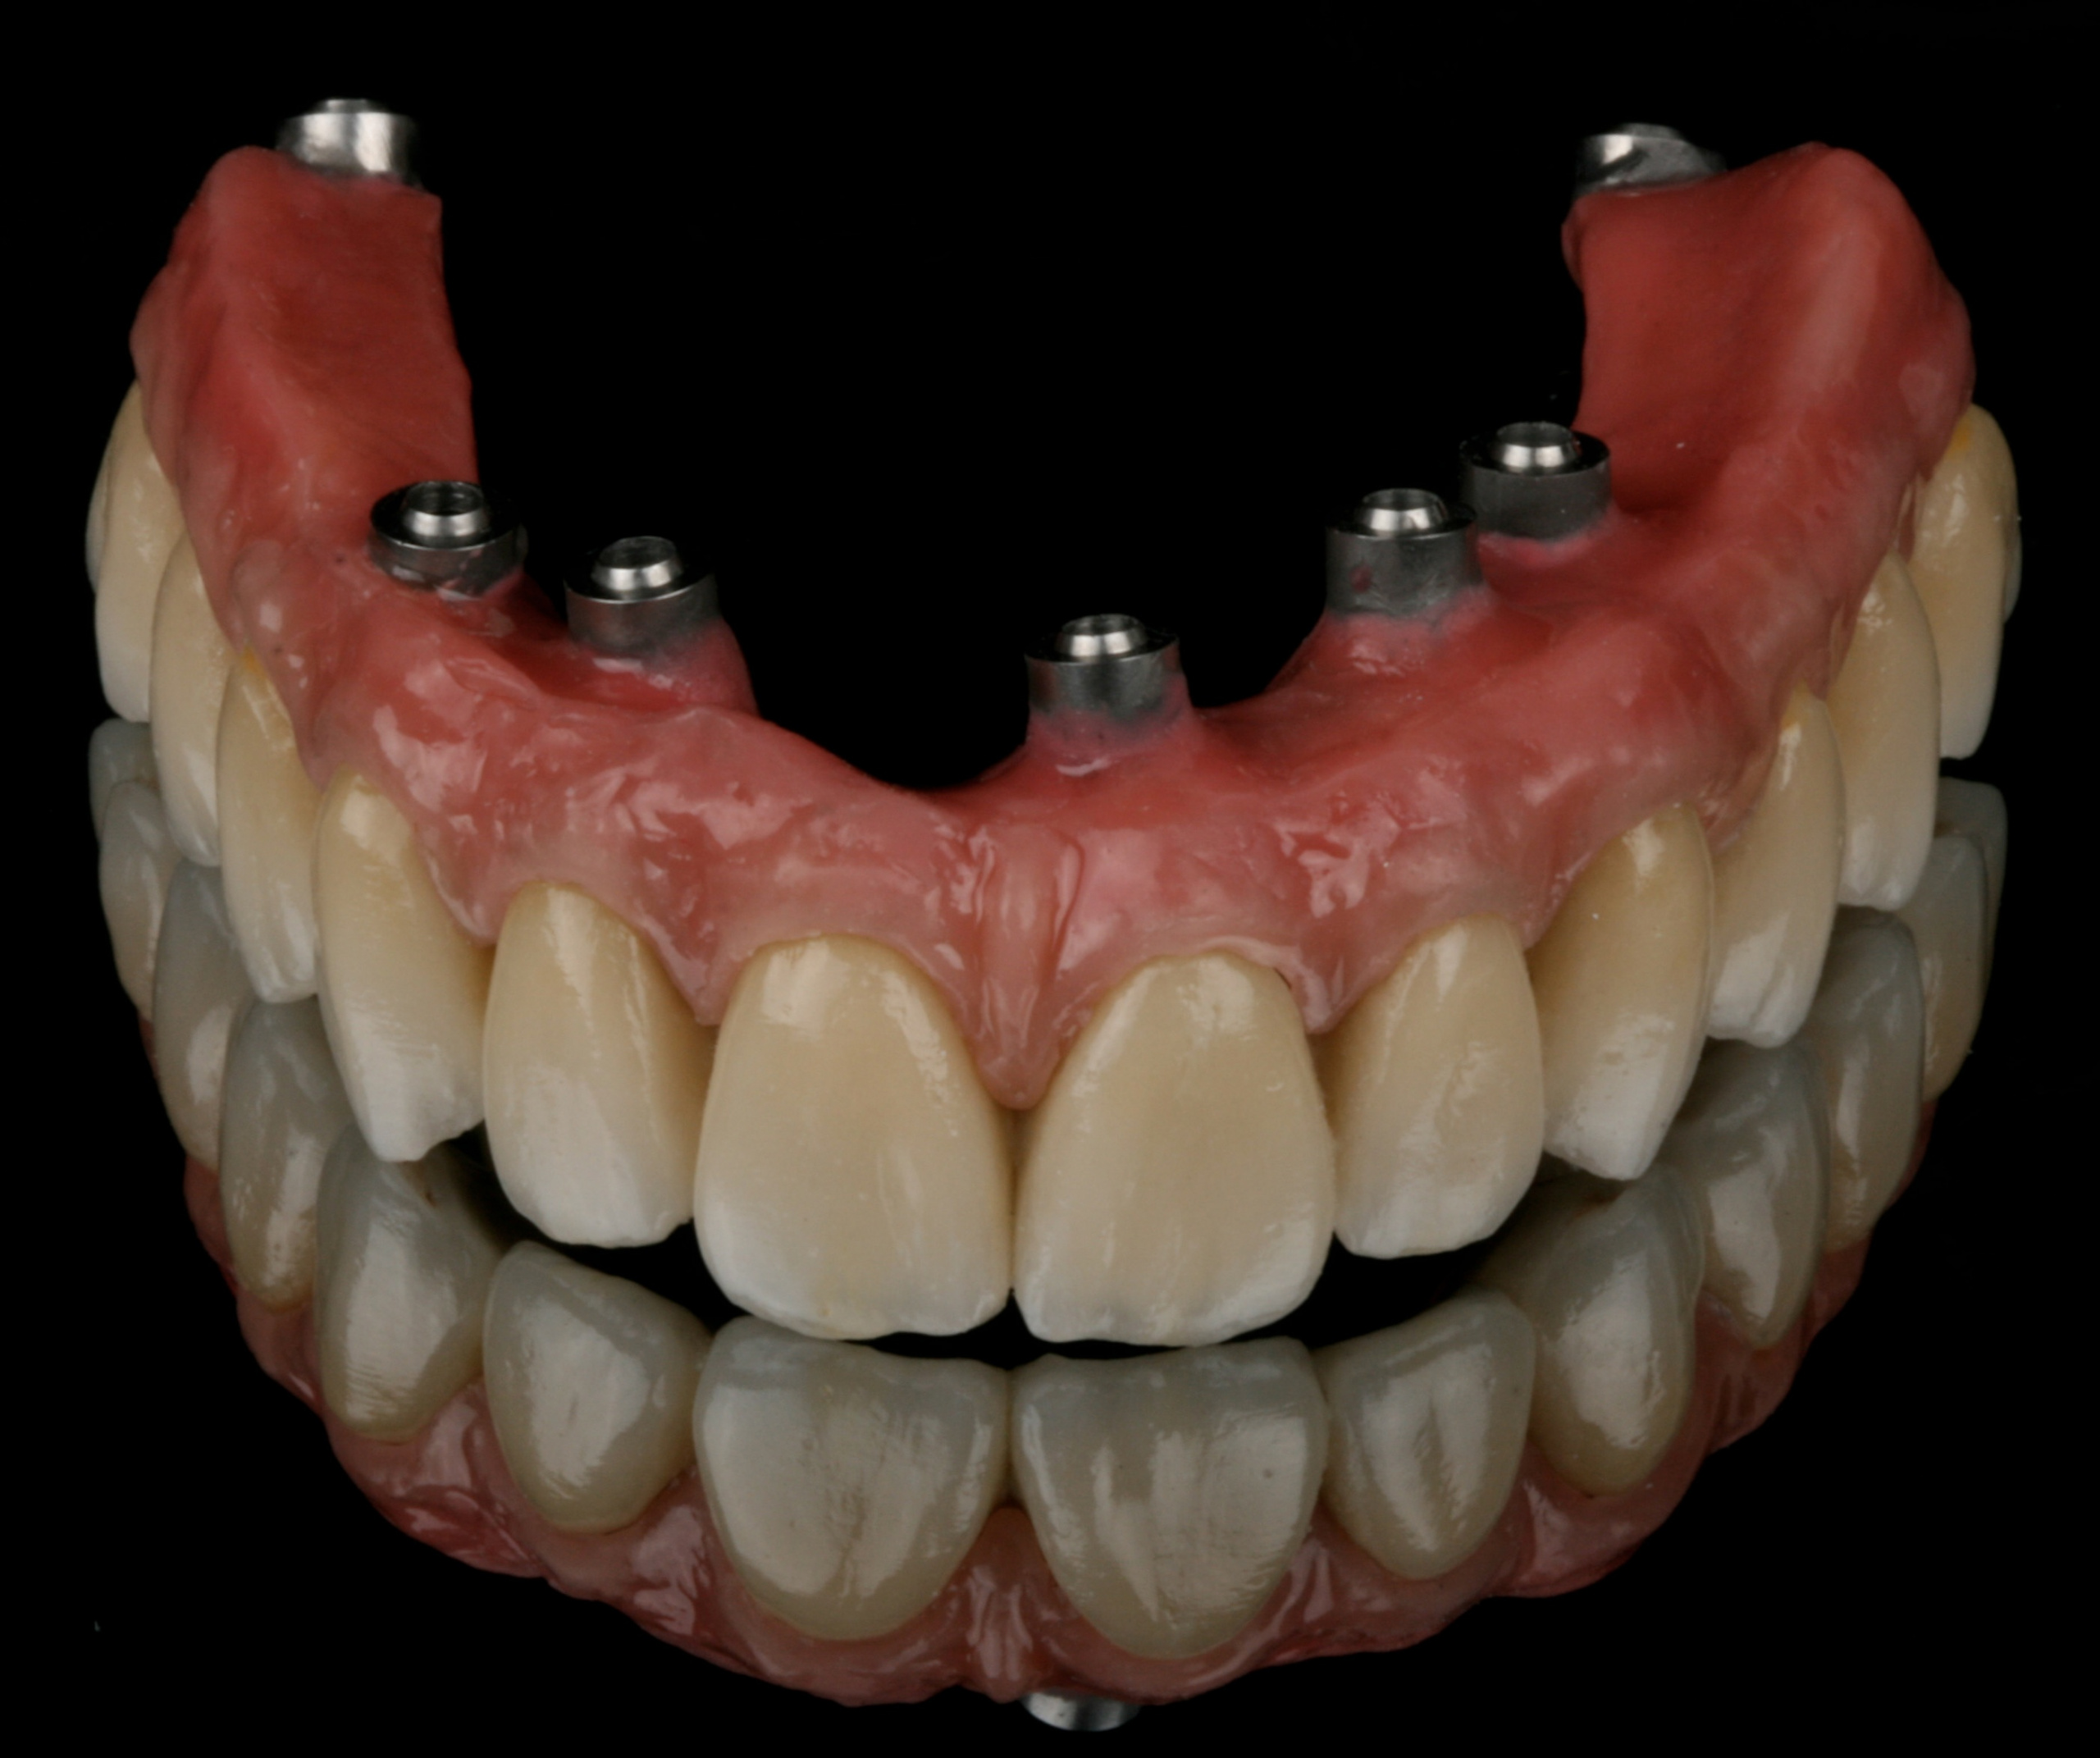 Invisalign Zona Sul SP - Odontologia Apeles Lemos - 5563-5471